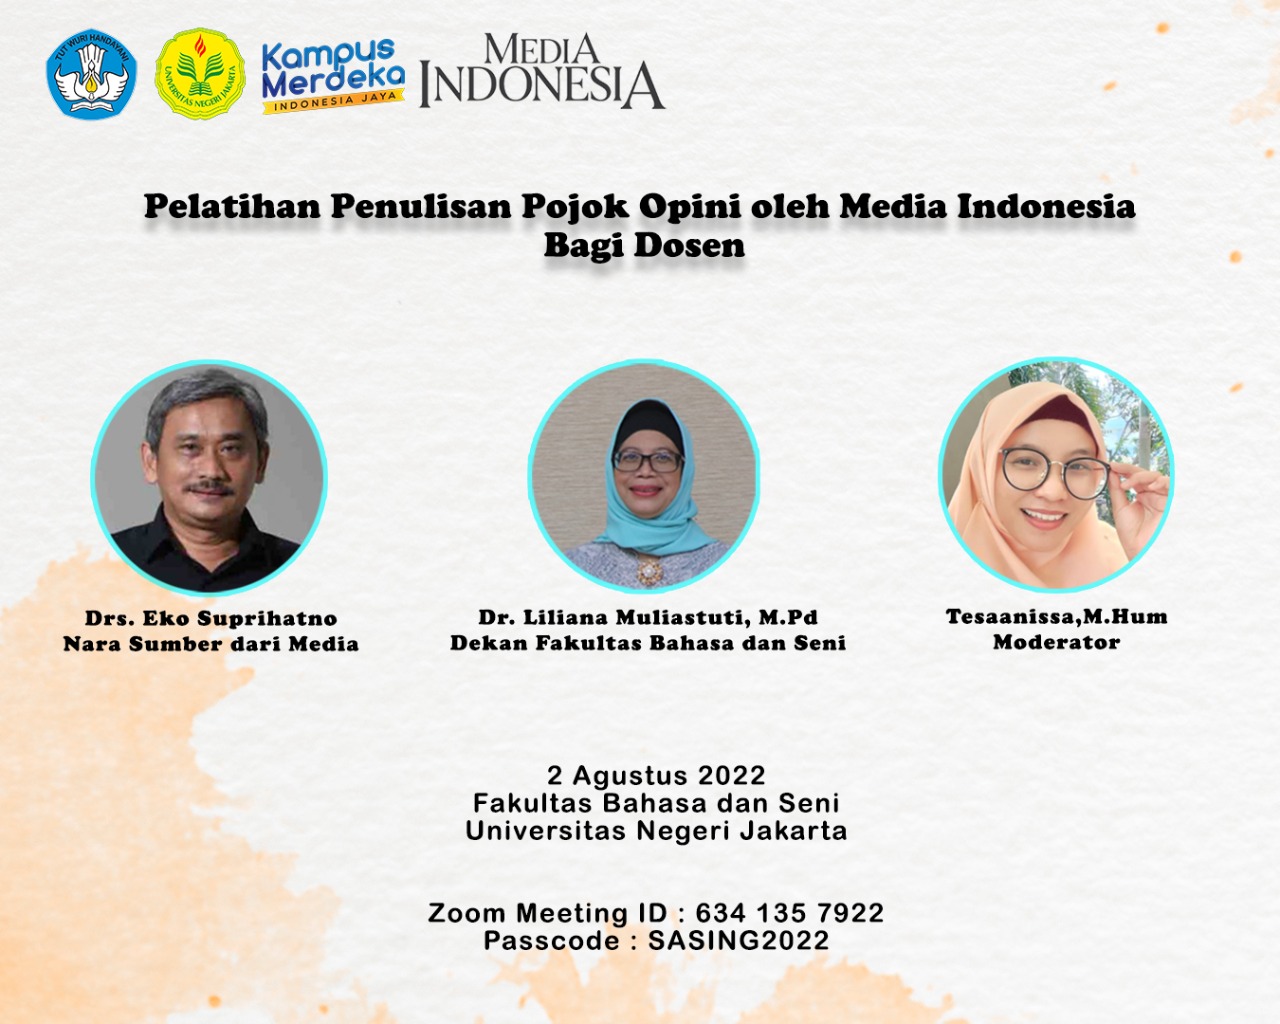 Pelatihan Penulisan Pojok Opini oleh Media Indonesia Bagi Dosen